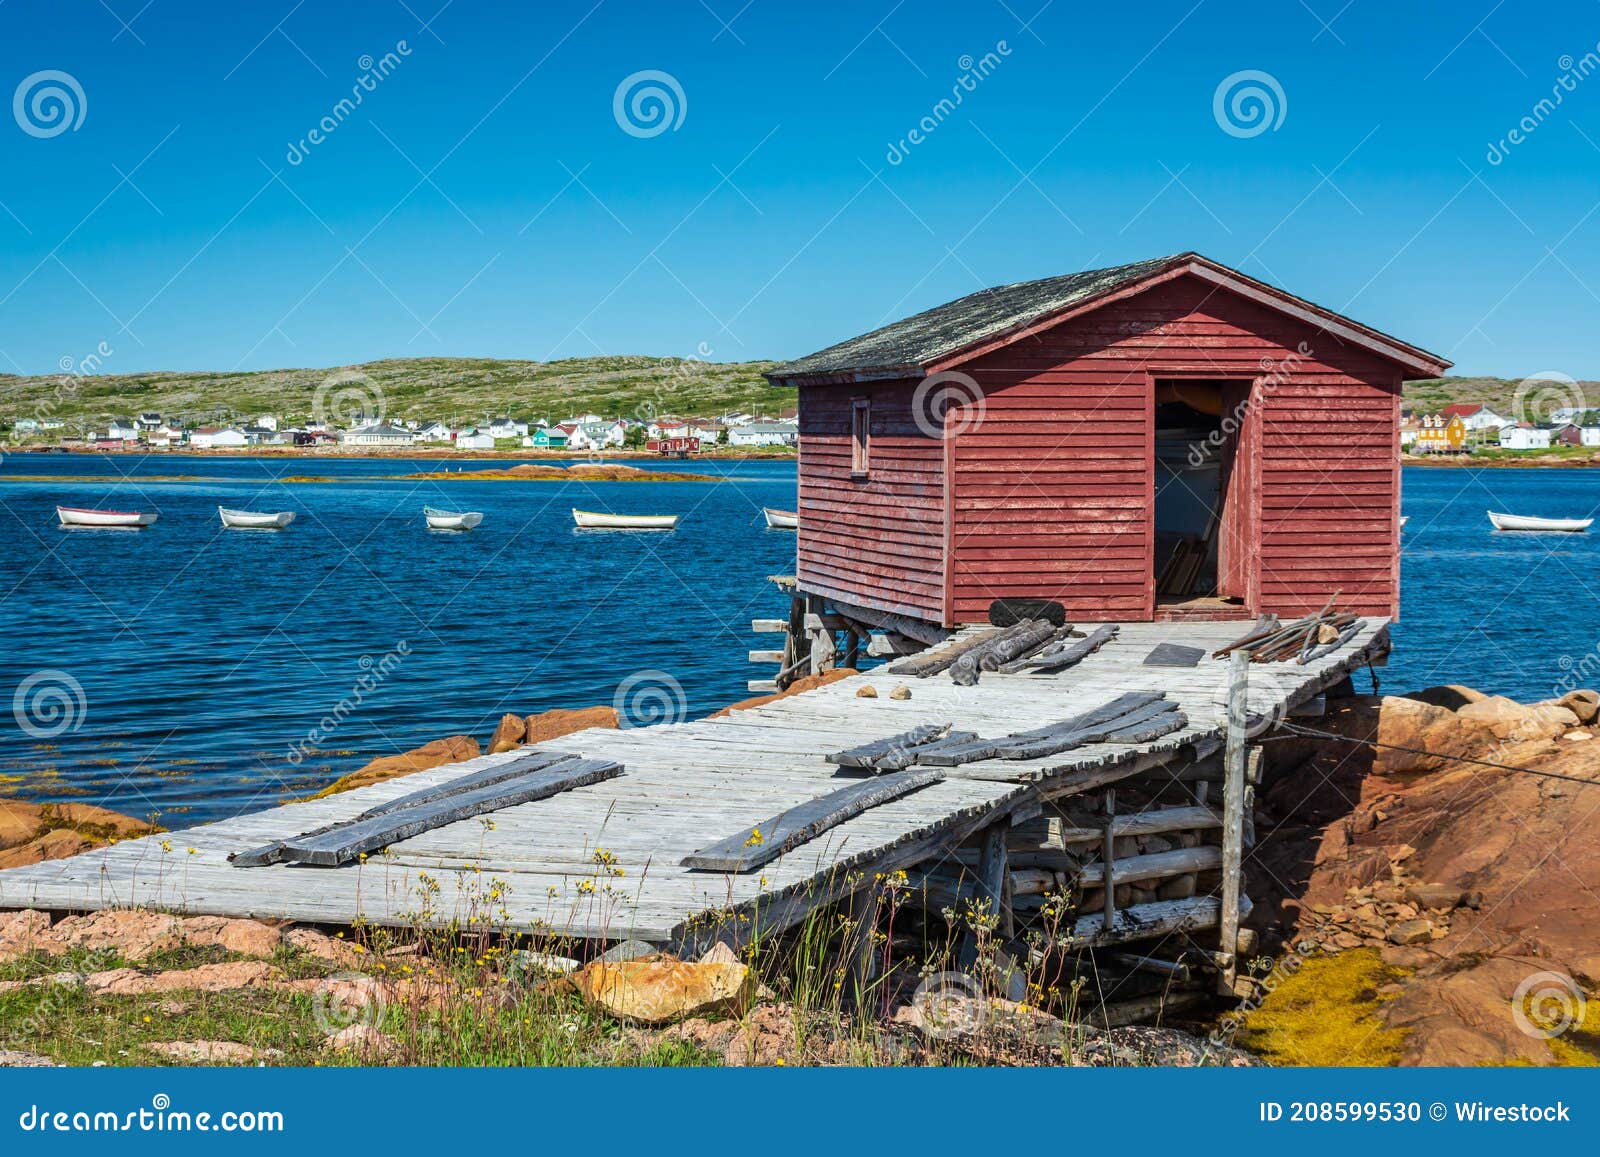 Newfoundland Fishing Shed stock photo. Image of blue - 208599530